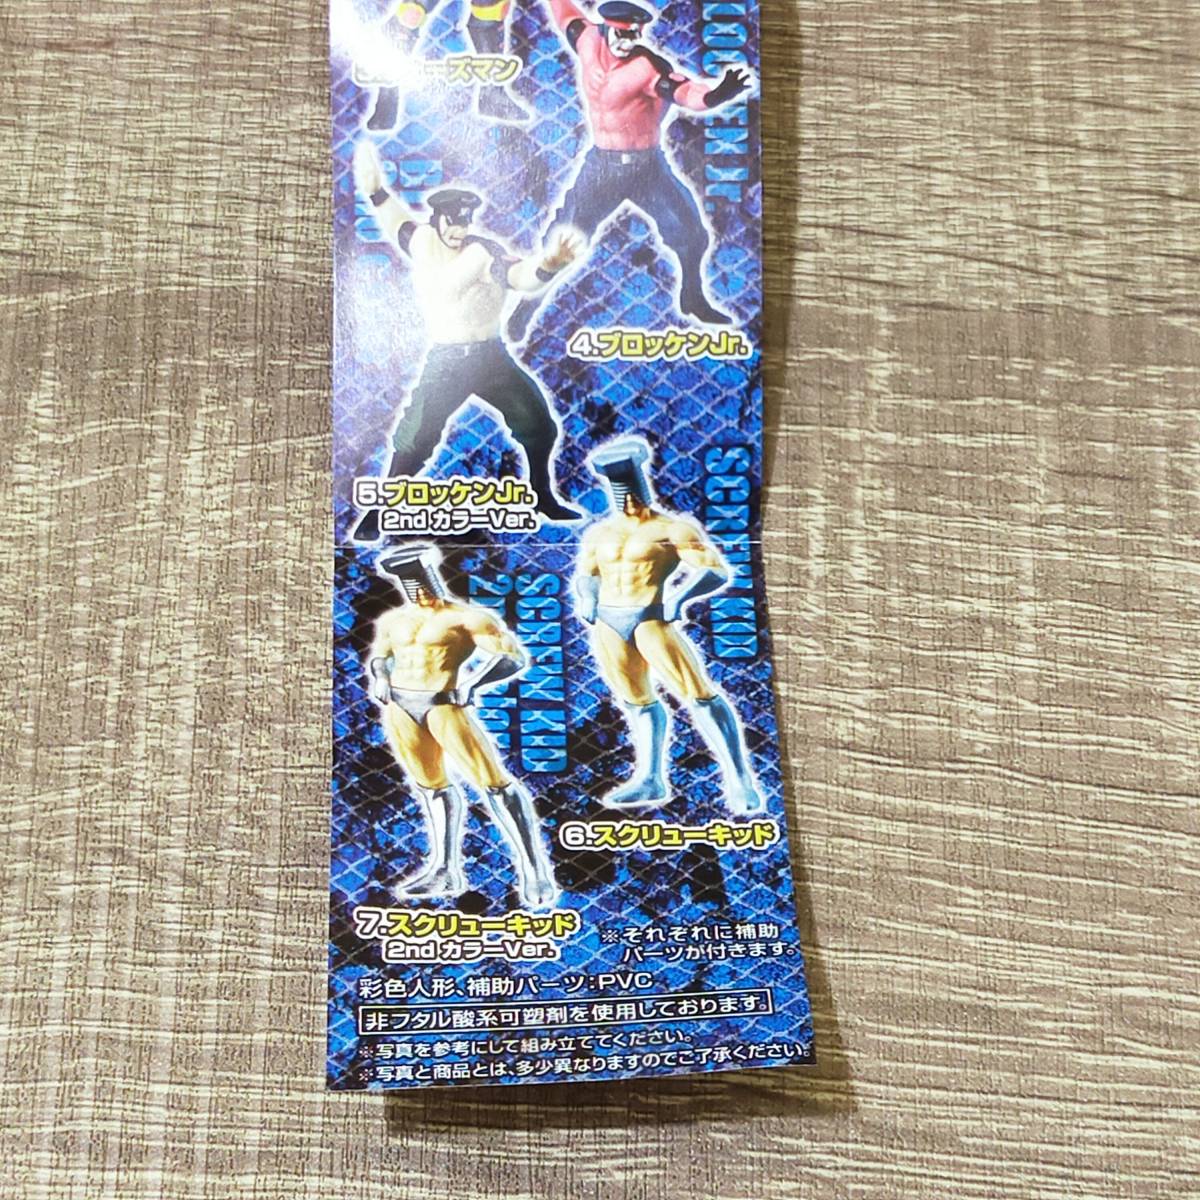 【フィギュア】 未開封 キン肉マン2 夢の超人タッグ編 アルティメットソリッド 全7種セット 彩色フルカラー 彫像造形 ネプチューンマンの画像9